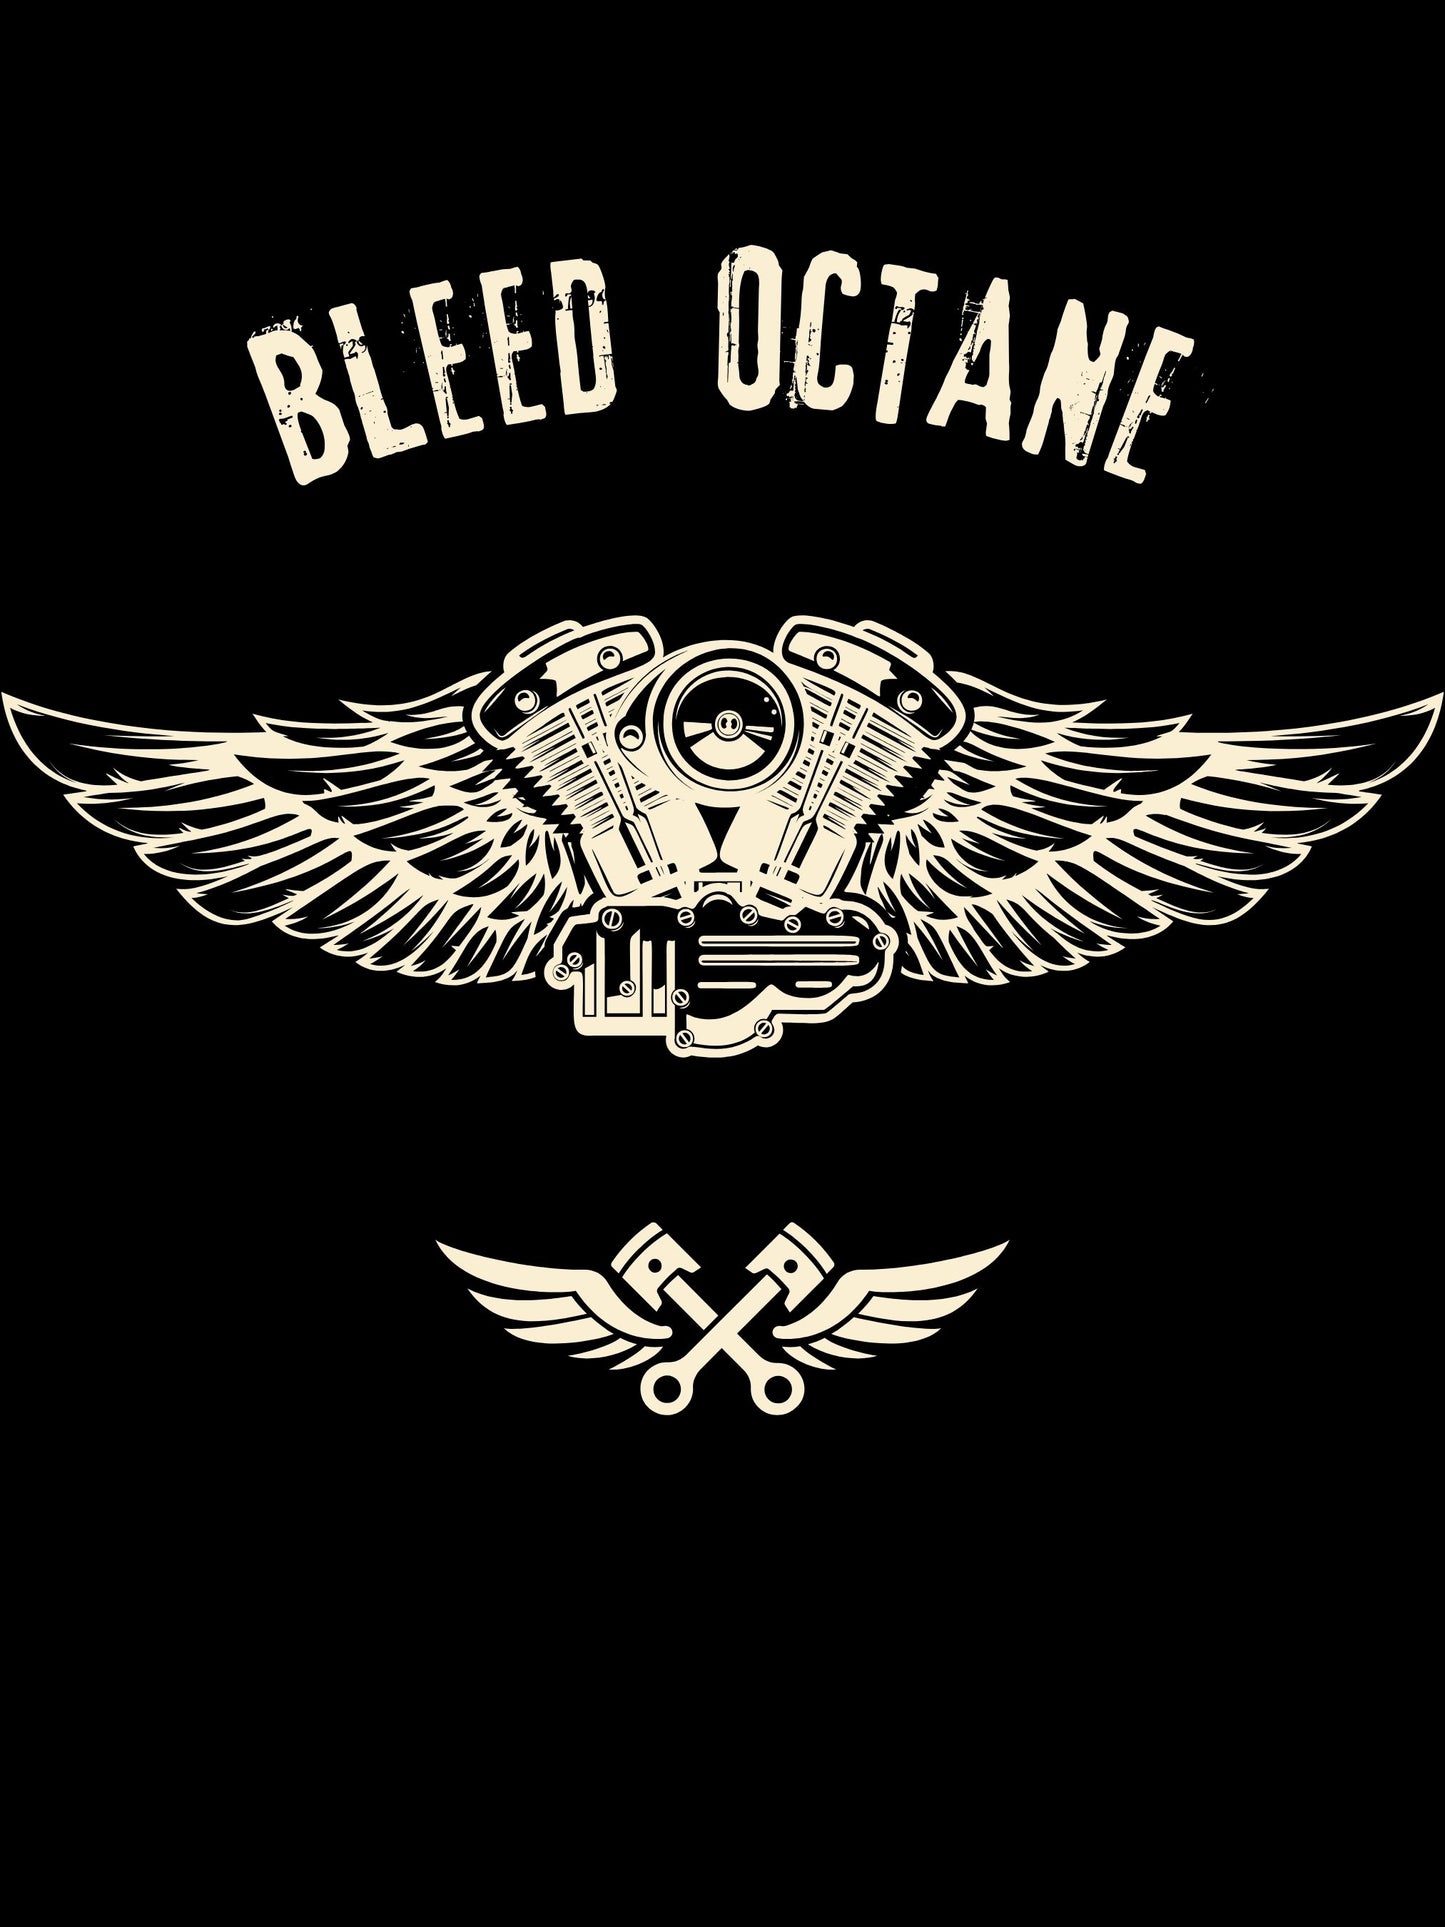 Sweatshirt motorcycle black - Bleed Octane